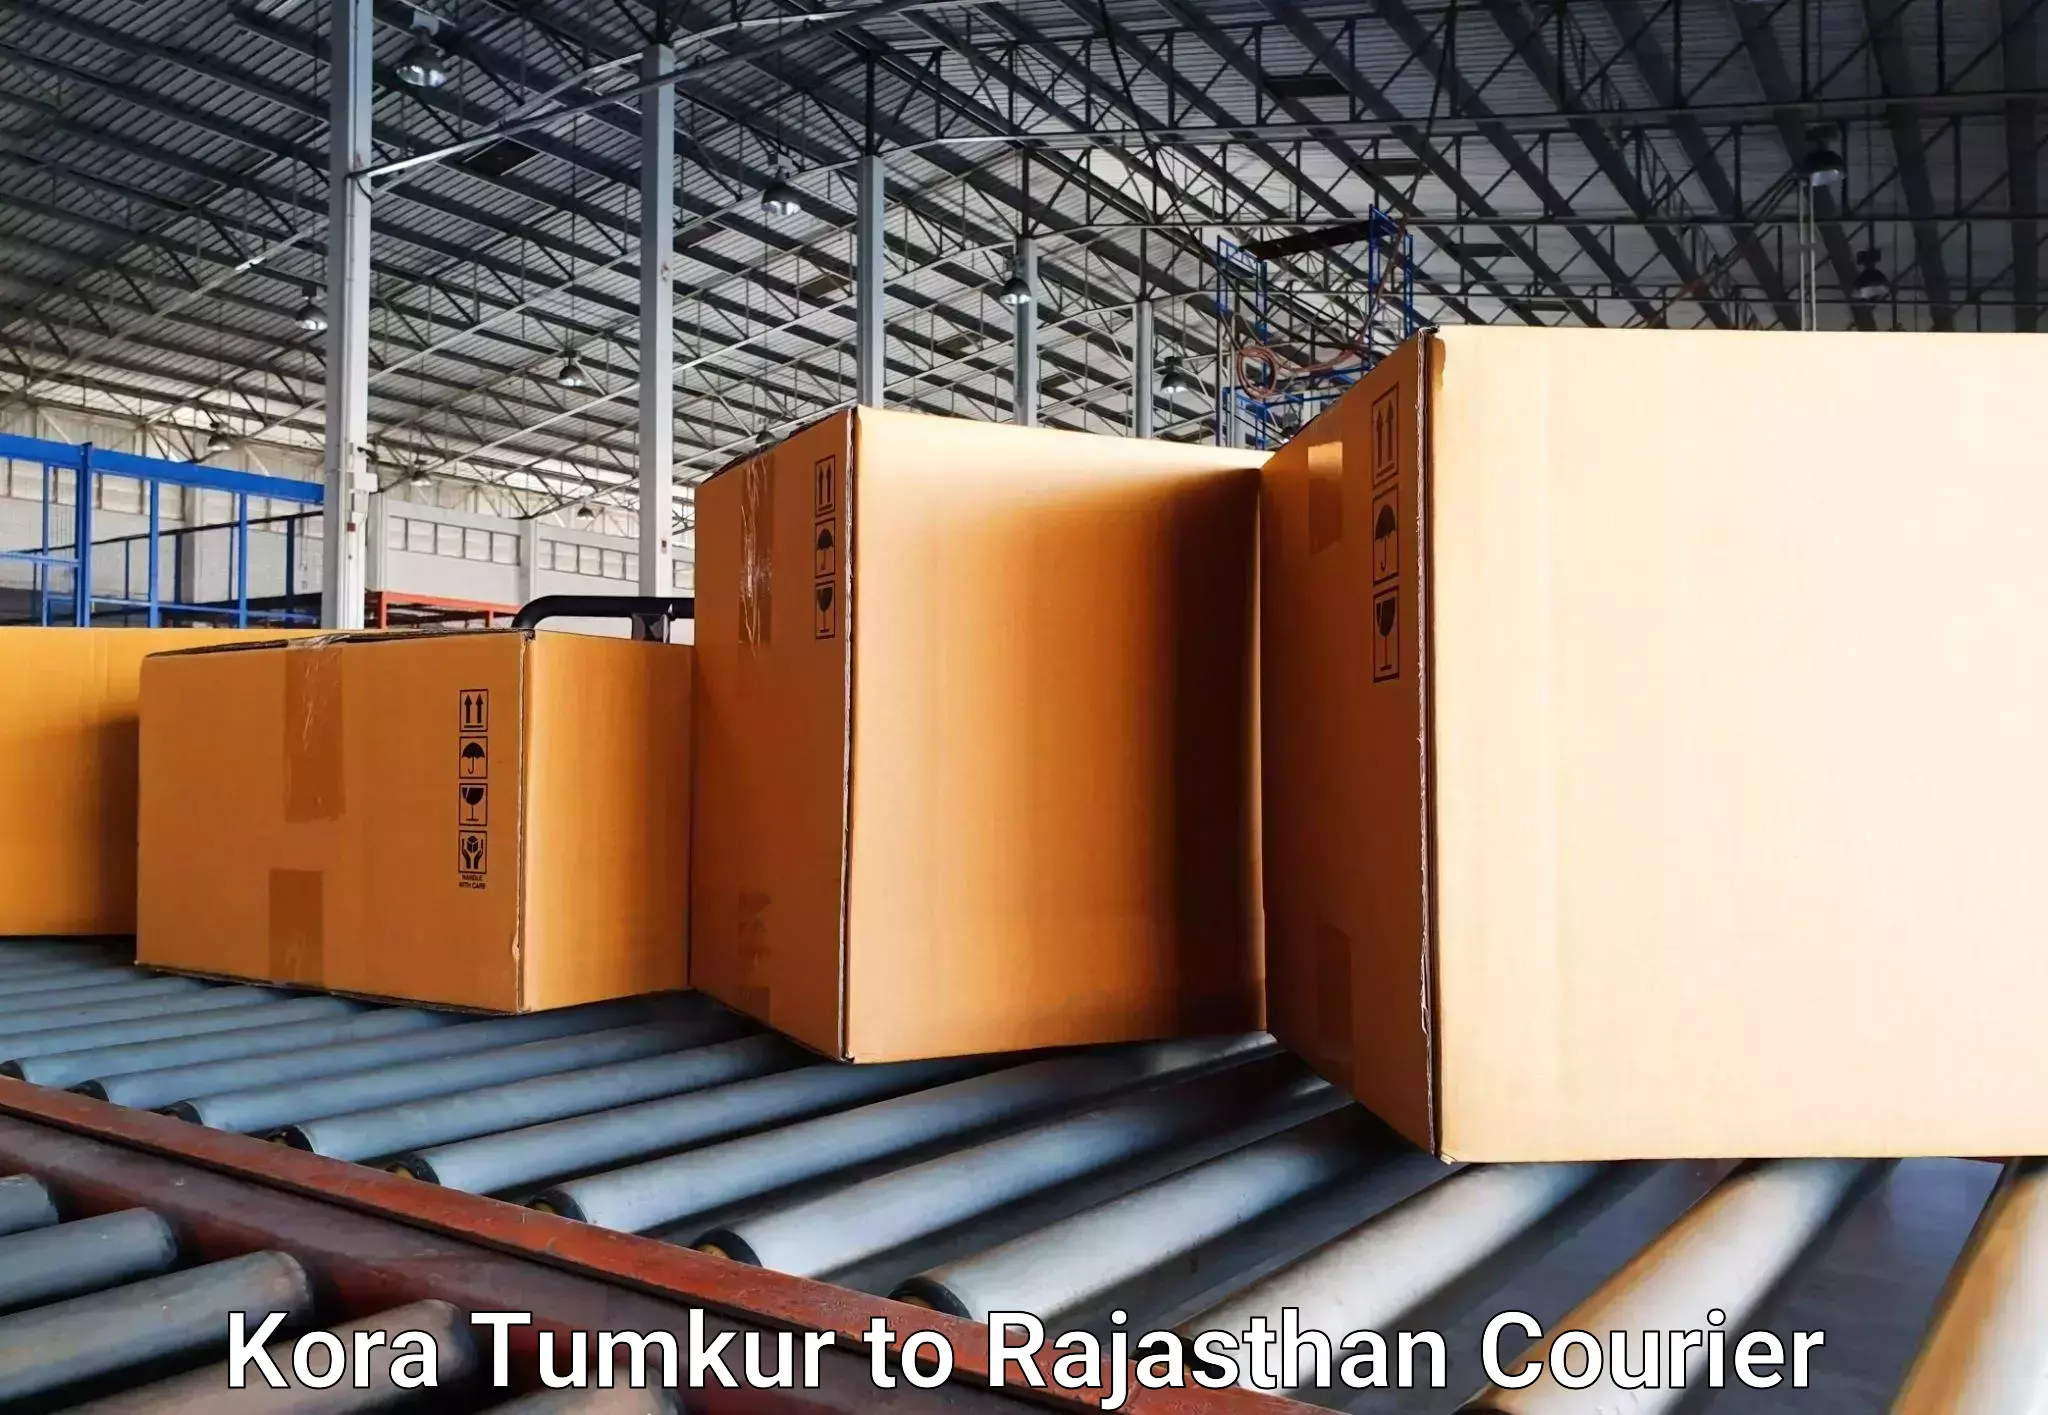 Automated luggage transport Kora Tumkur to Nainwa